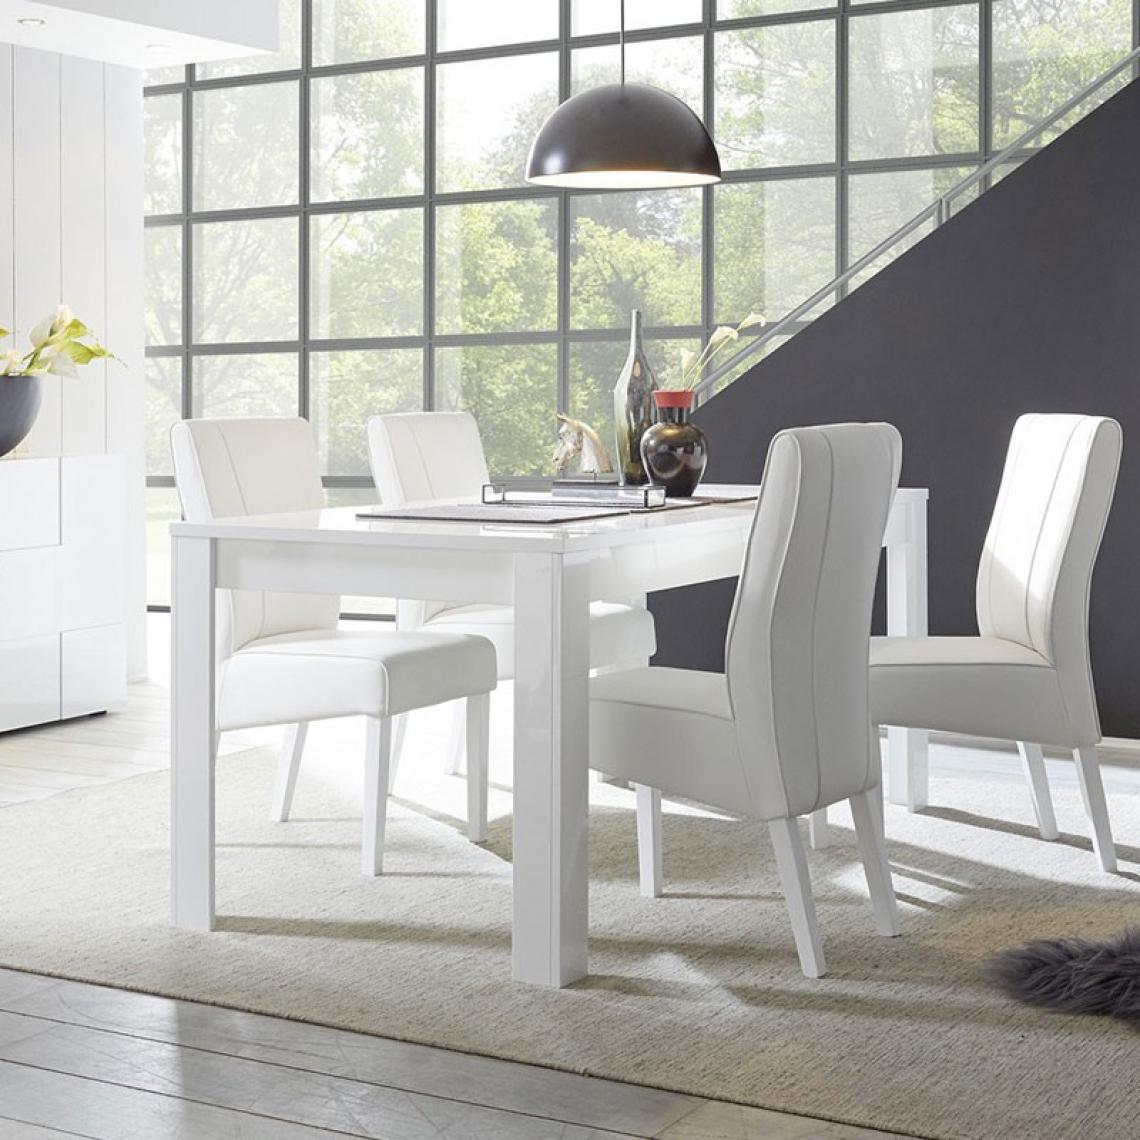 Webmarketpoint - Table extensible avec finition blanc brillant 90x137xh.79 cm - Tables à manger